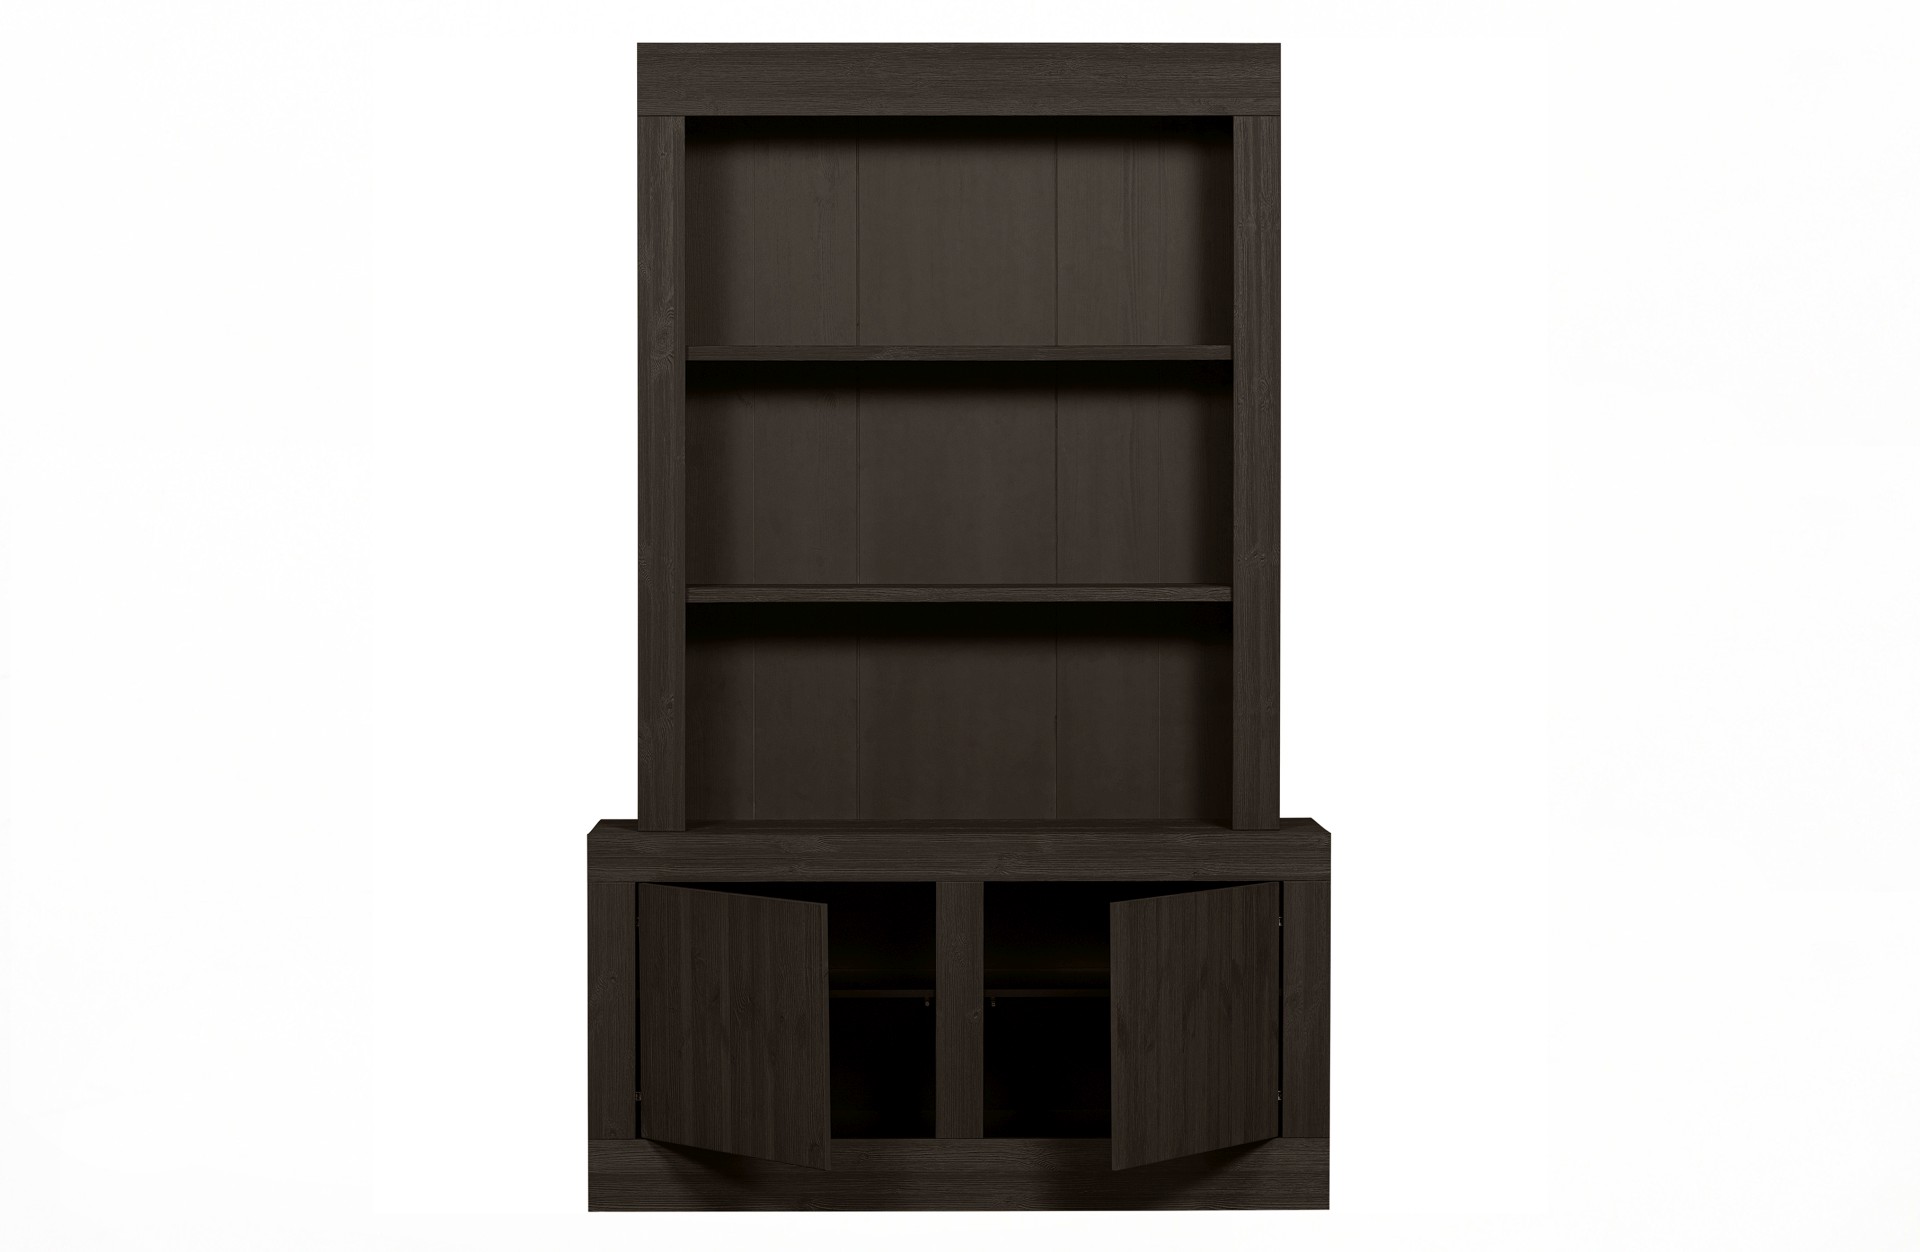 Der Buffetschrank Yumi überzeugt mit seinem modernem Design. Gefertigt wurde er aus Kiefernholz, welches einen dunkelbraunen Farbton besitzt. Der Schrank verfügt über zwei Türen und drei offene Fächer. Die Breite beträgt 146 cm.